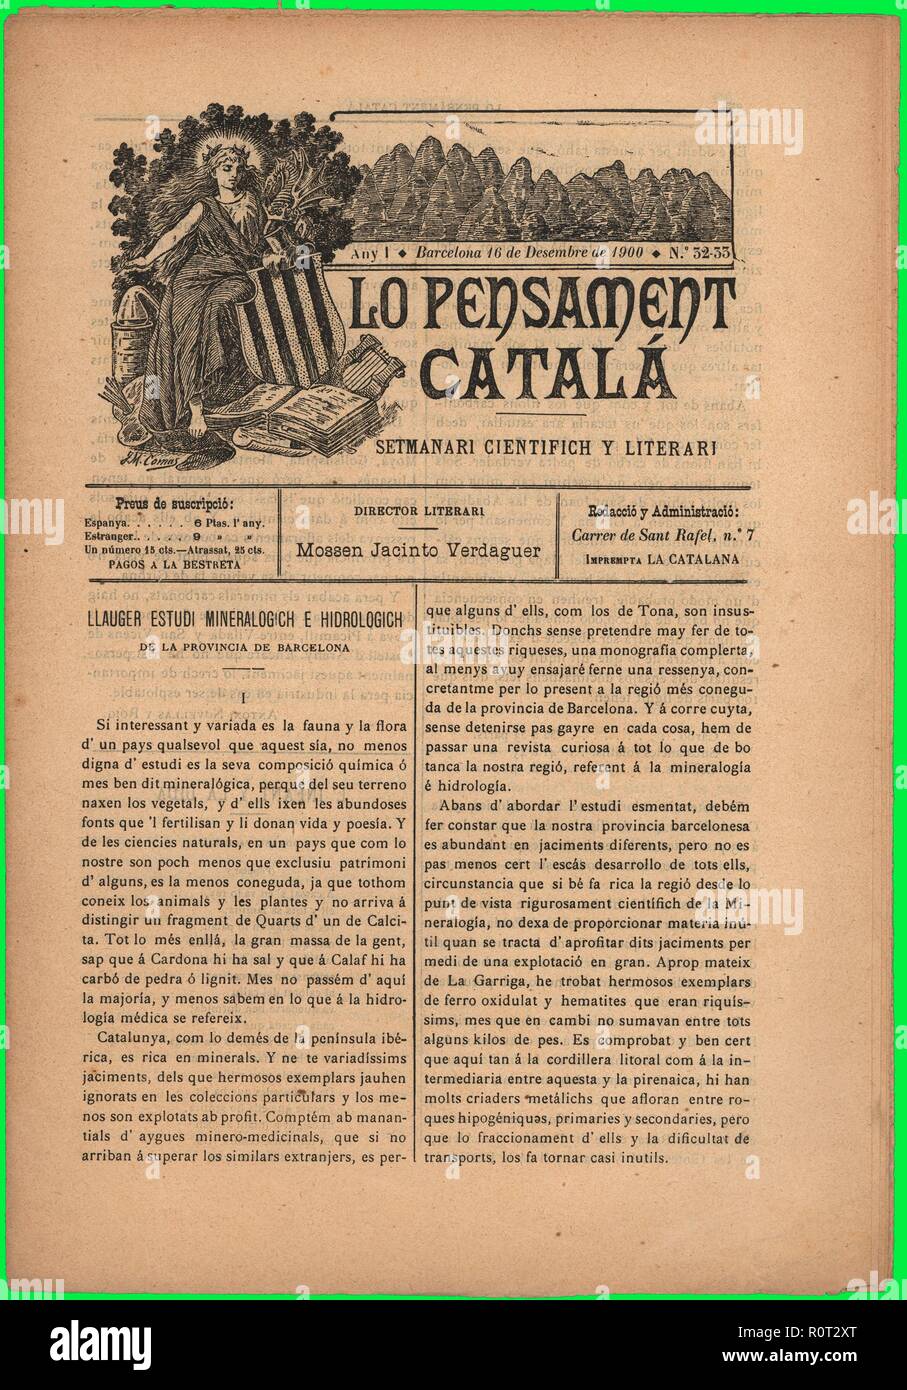 Portada de la revista científica y literaria Lo Pensament Catalá, editada en Barcelona, diciembre de 1900. Stock Photo